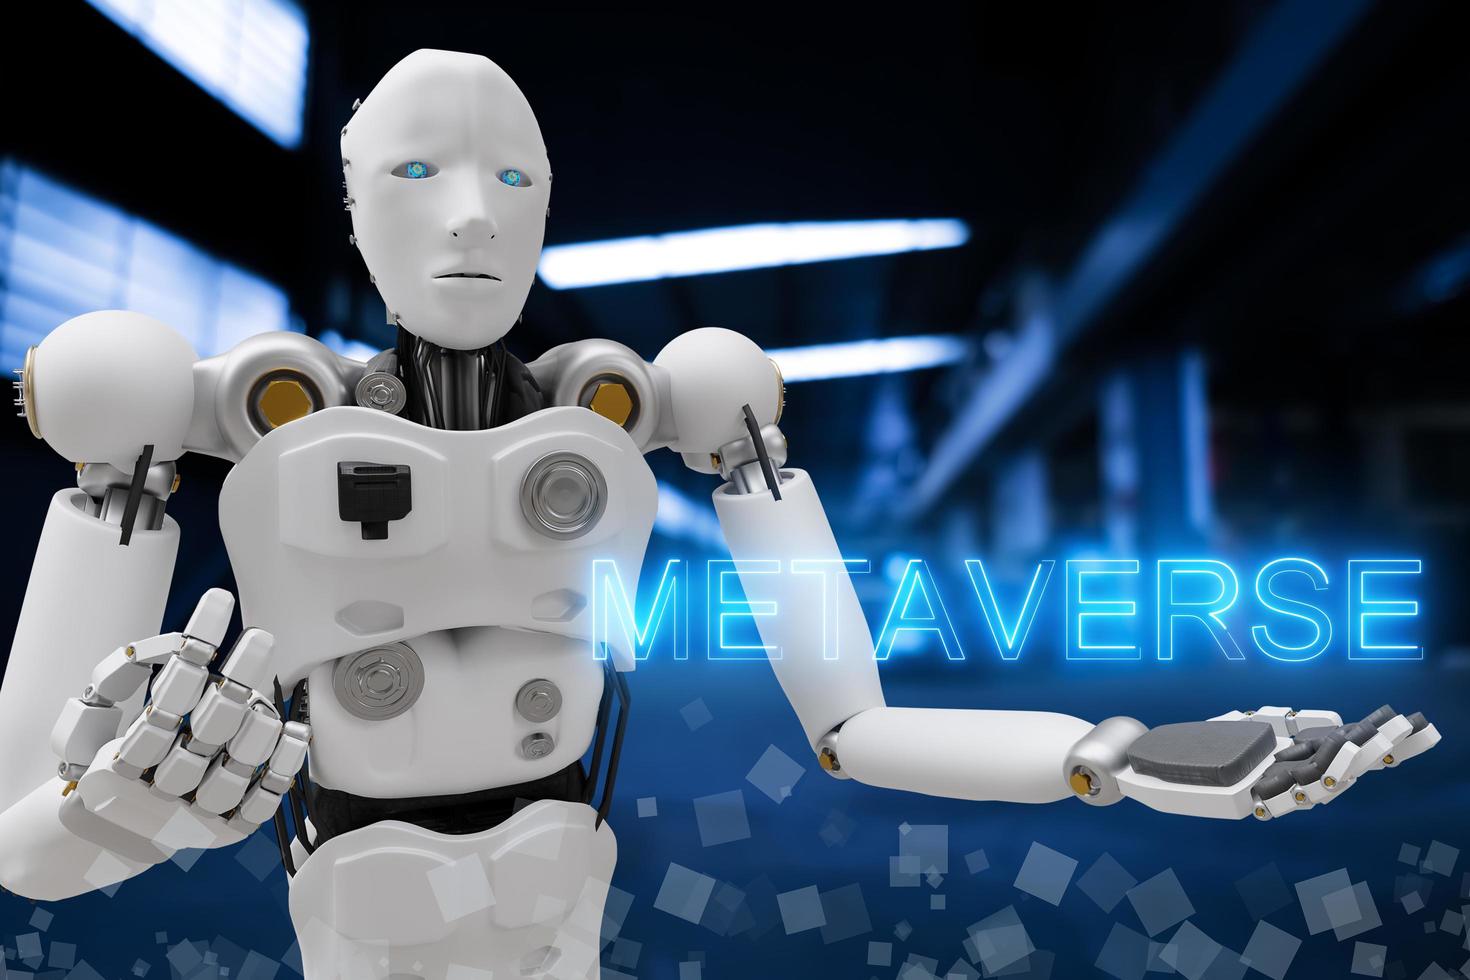 robot métaverse vr avatar jeu de réalité réalité virtuelle des personnes investissement dans la technologie blockchain, mode de vie professionnel réalité virtuelle vr connexion mondiale cyber avatar métaverse personnes 2022 rendu 3d photo